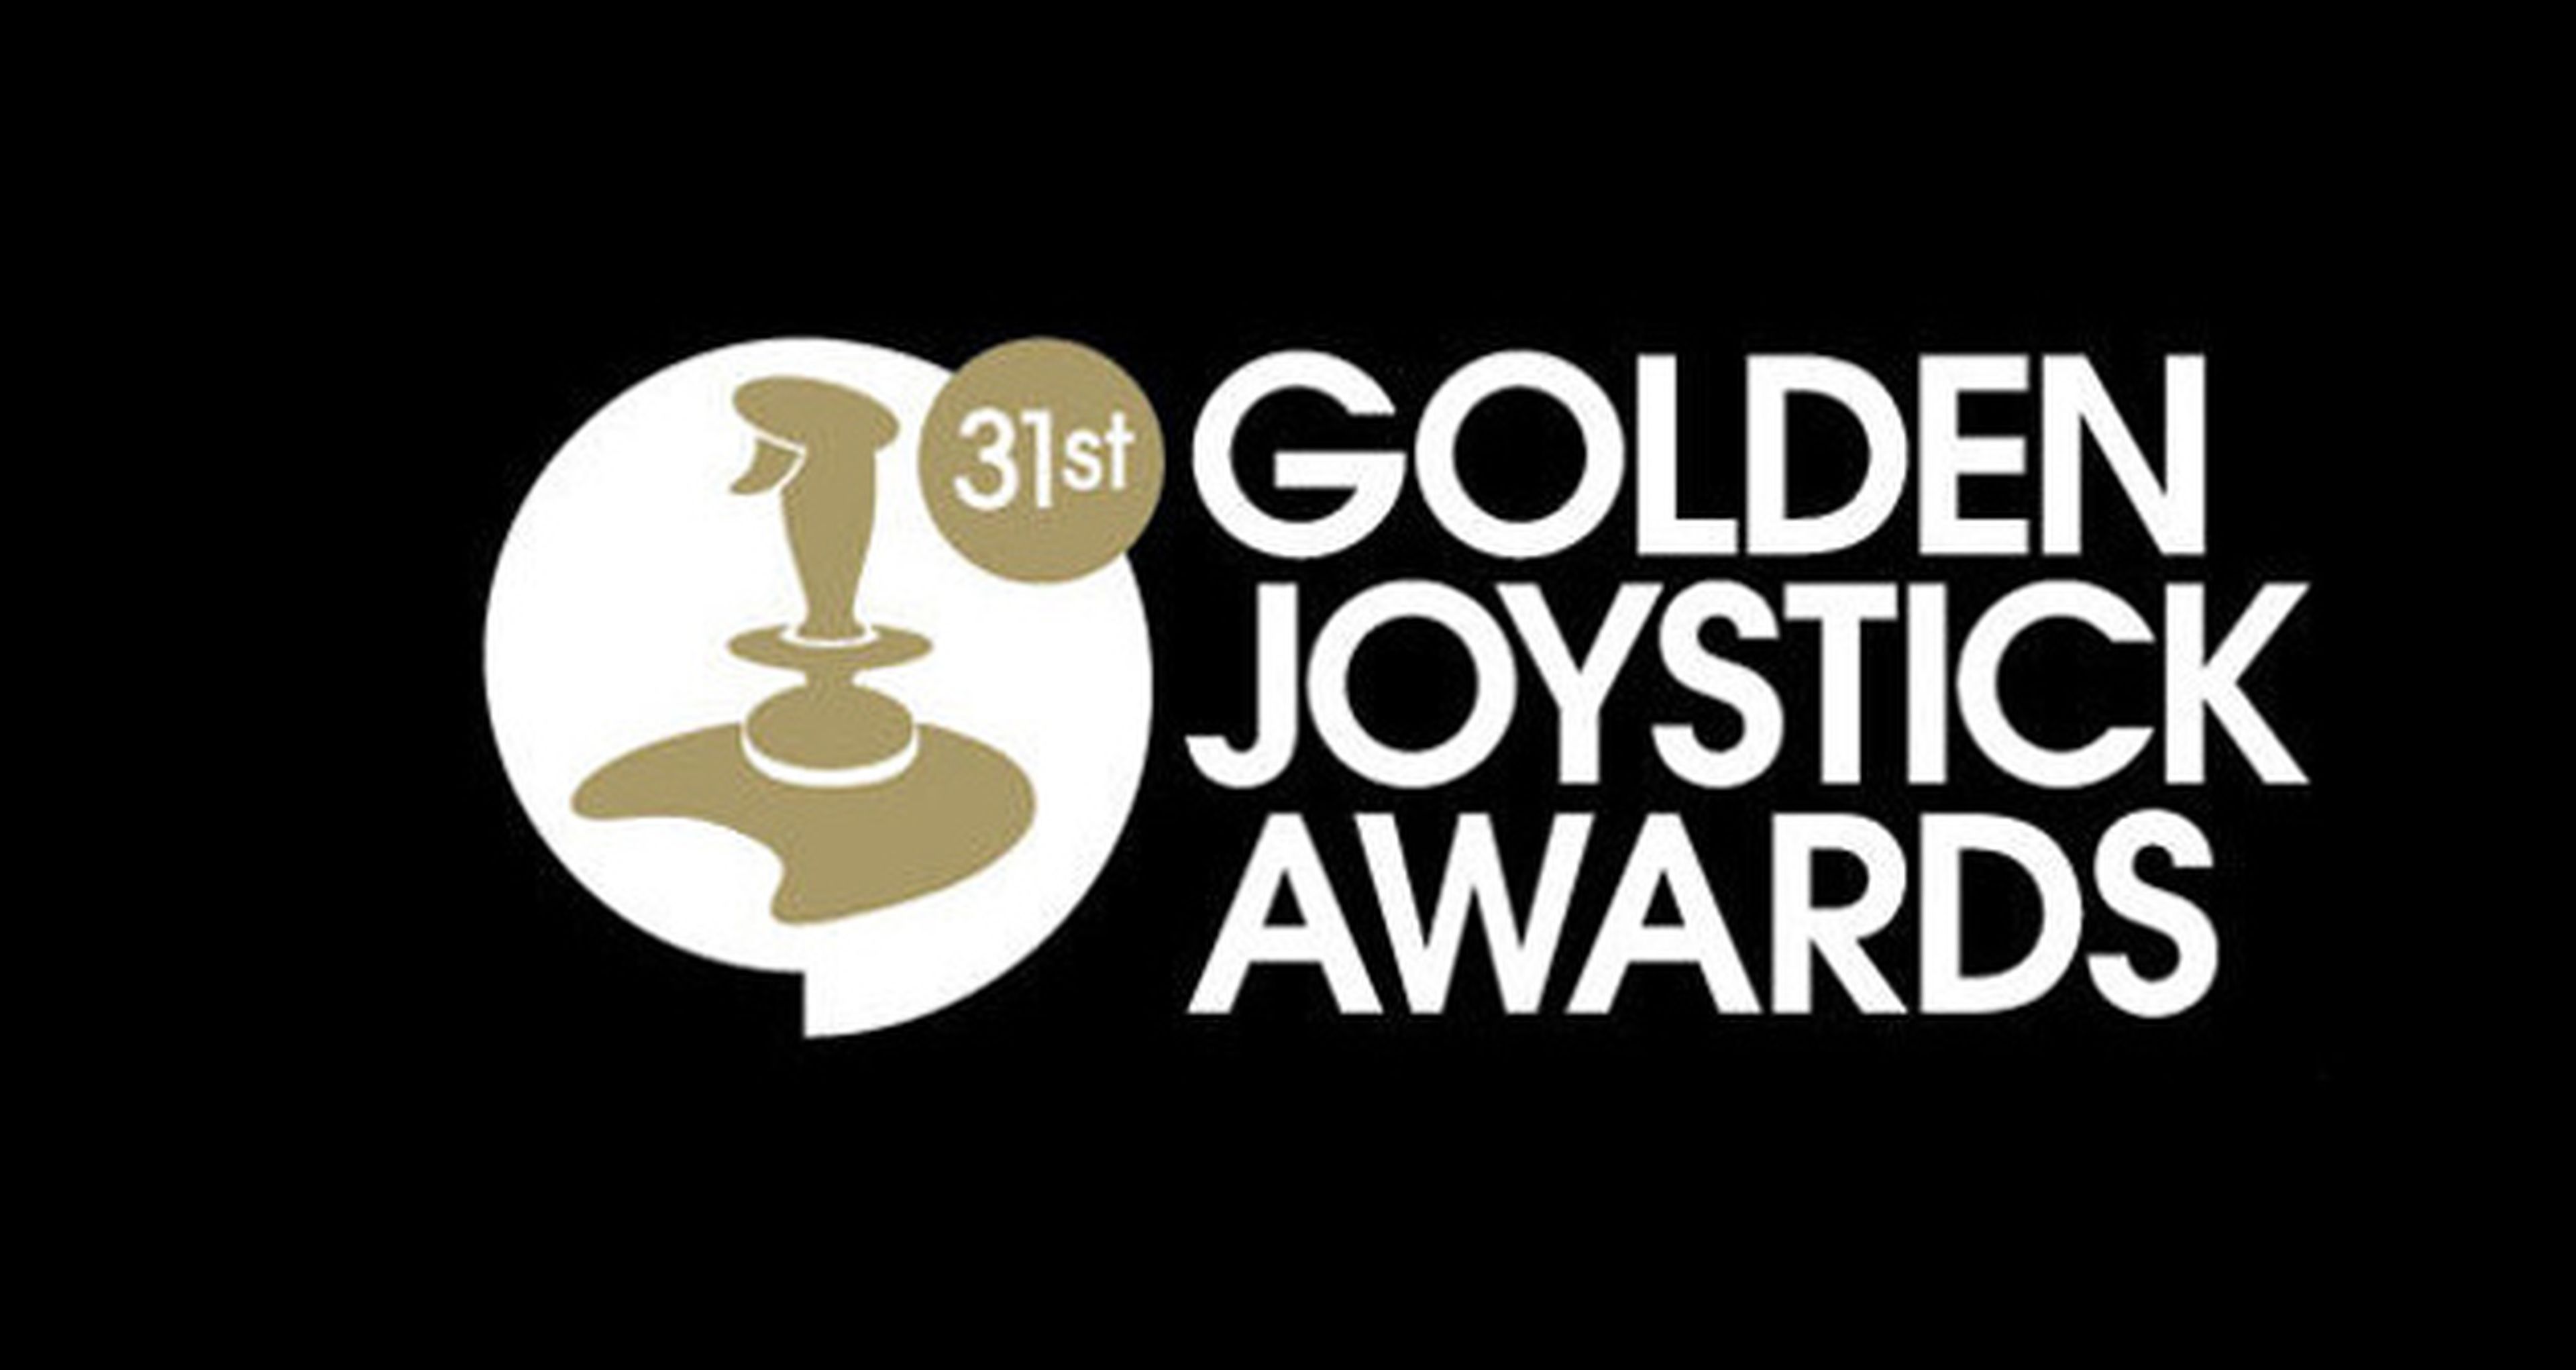 Lista de nominados a los Golden Joystick 2013 Awards